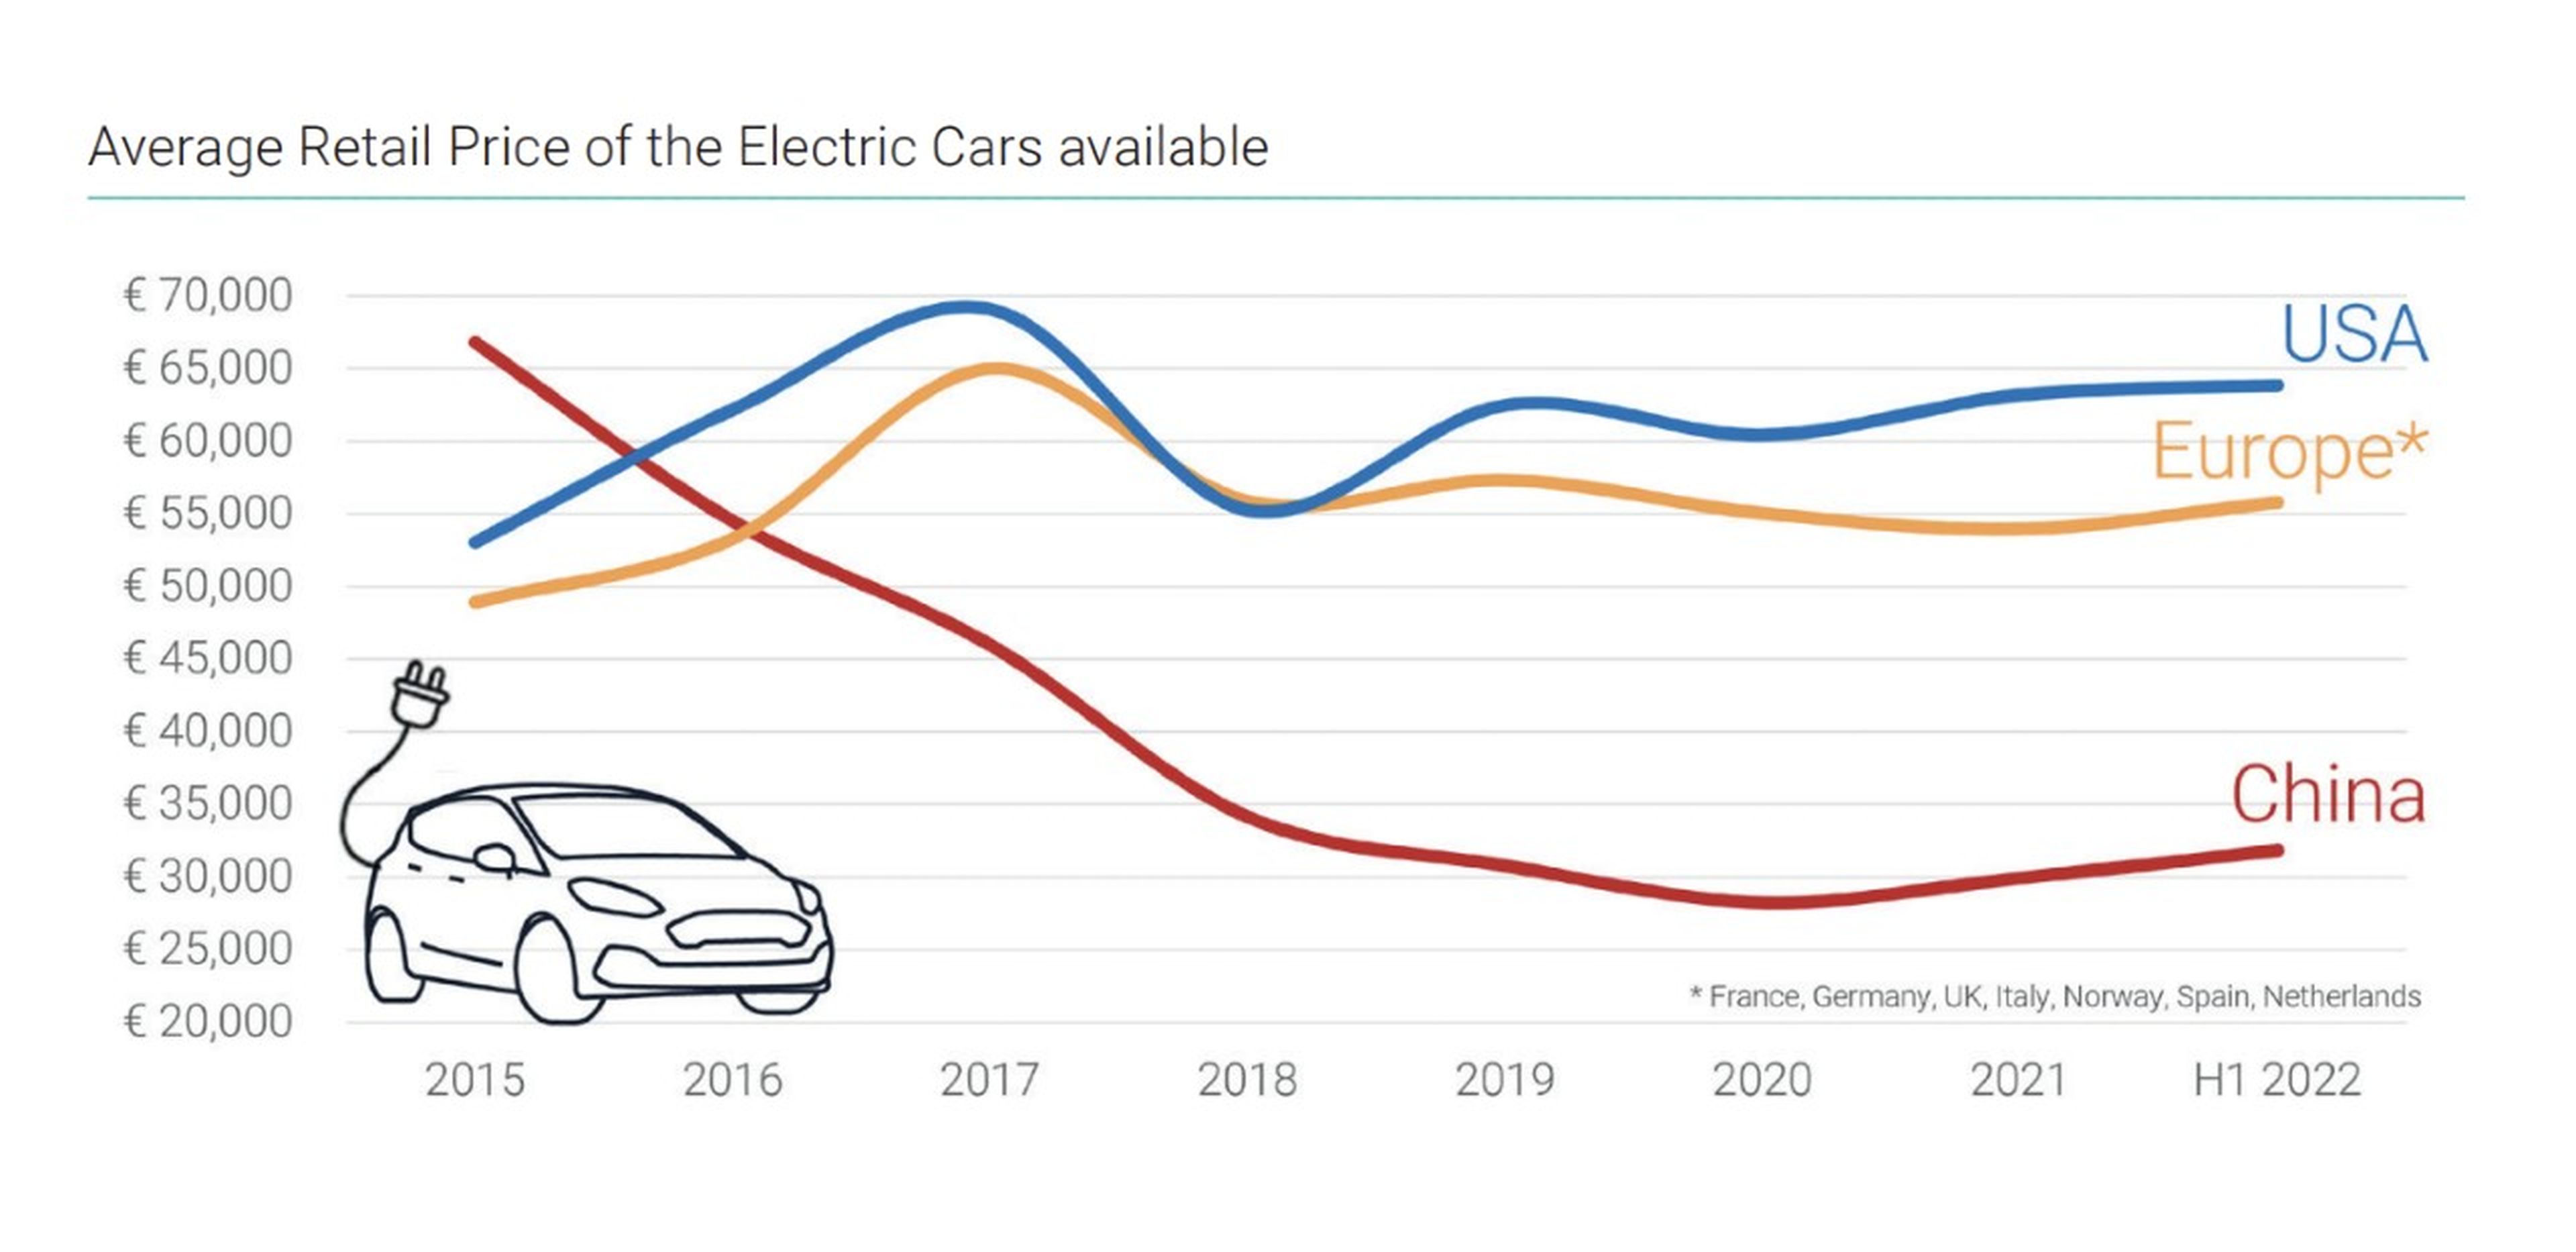 China, primer país que consigue bajar a la mitad el precio del coche eléctrico